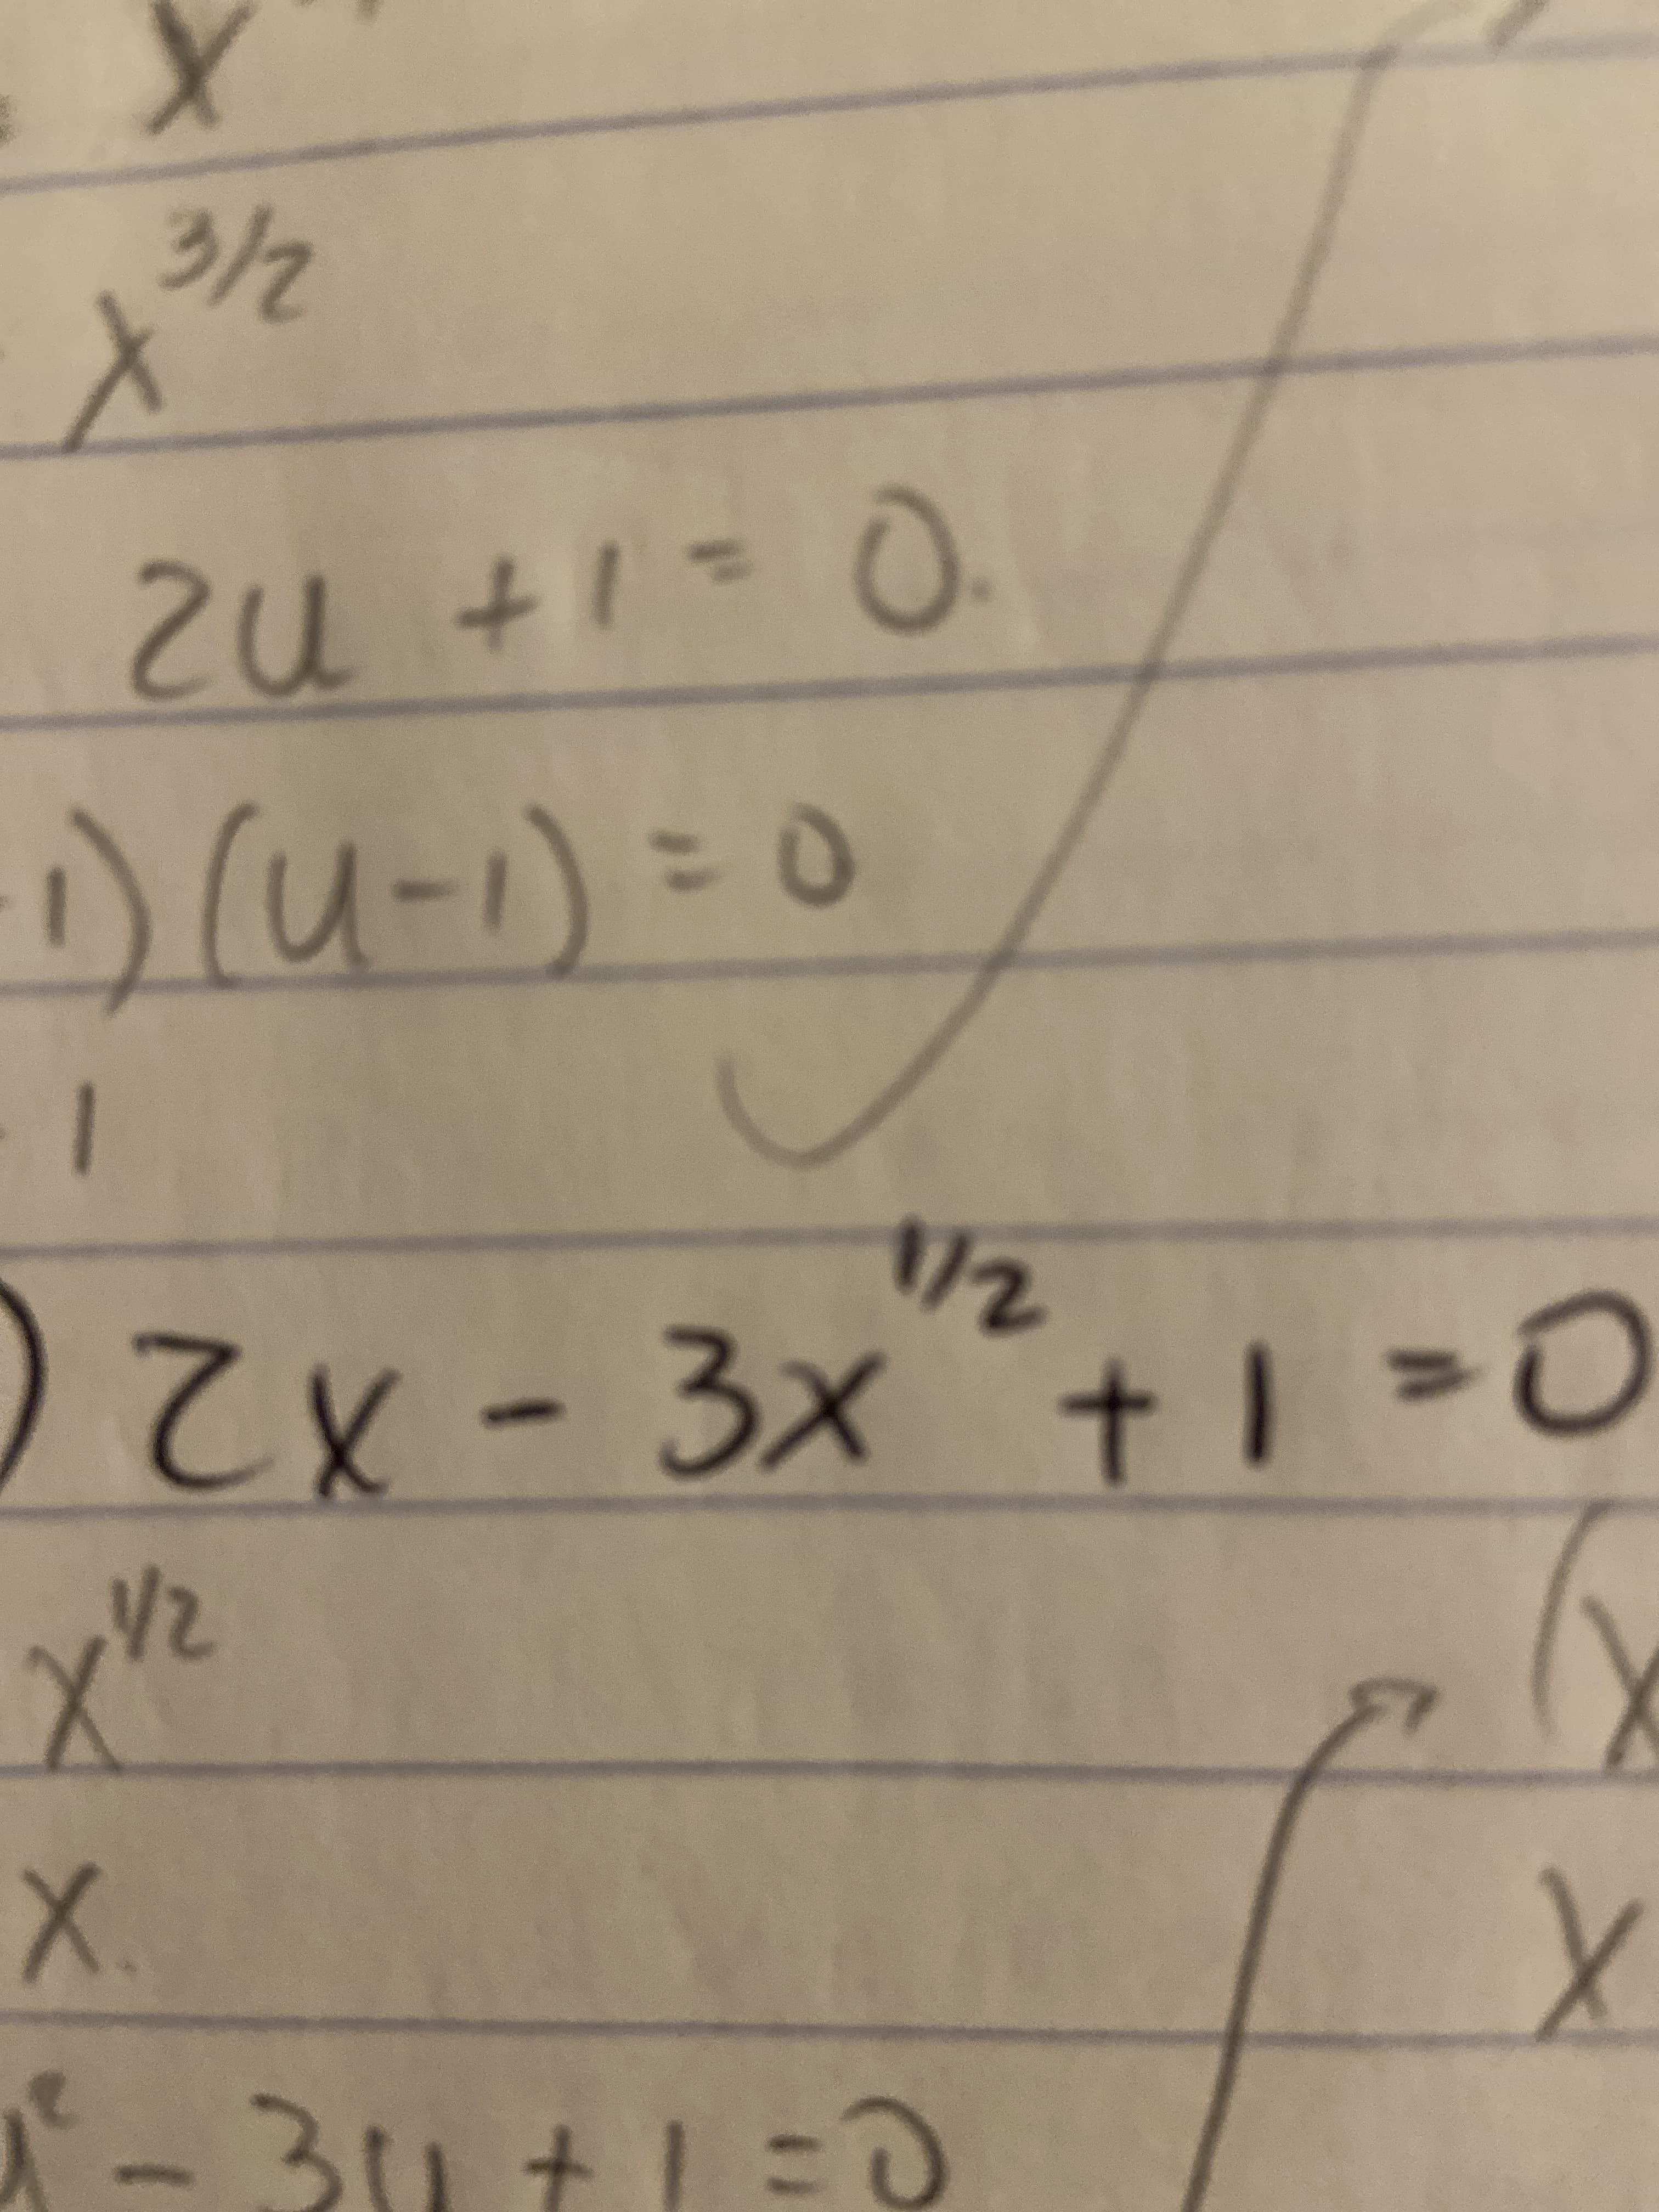 3/2
zu +1=0.
)(u-)=0
1/2
3.
CX
V2
X.
+
11
